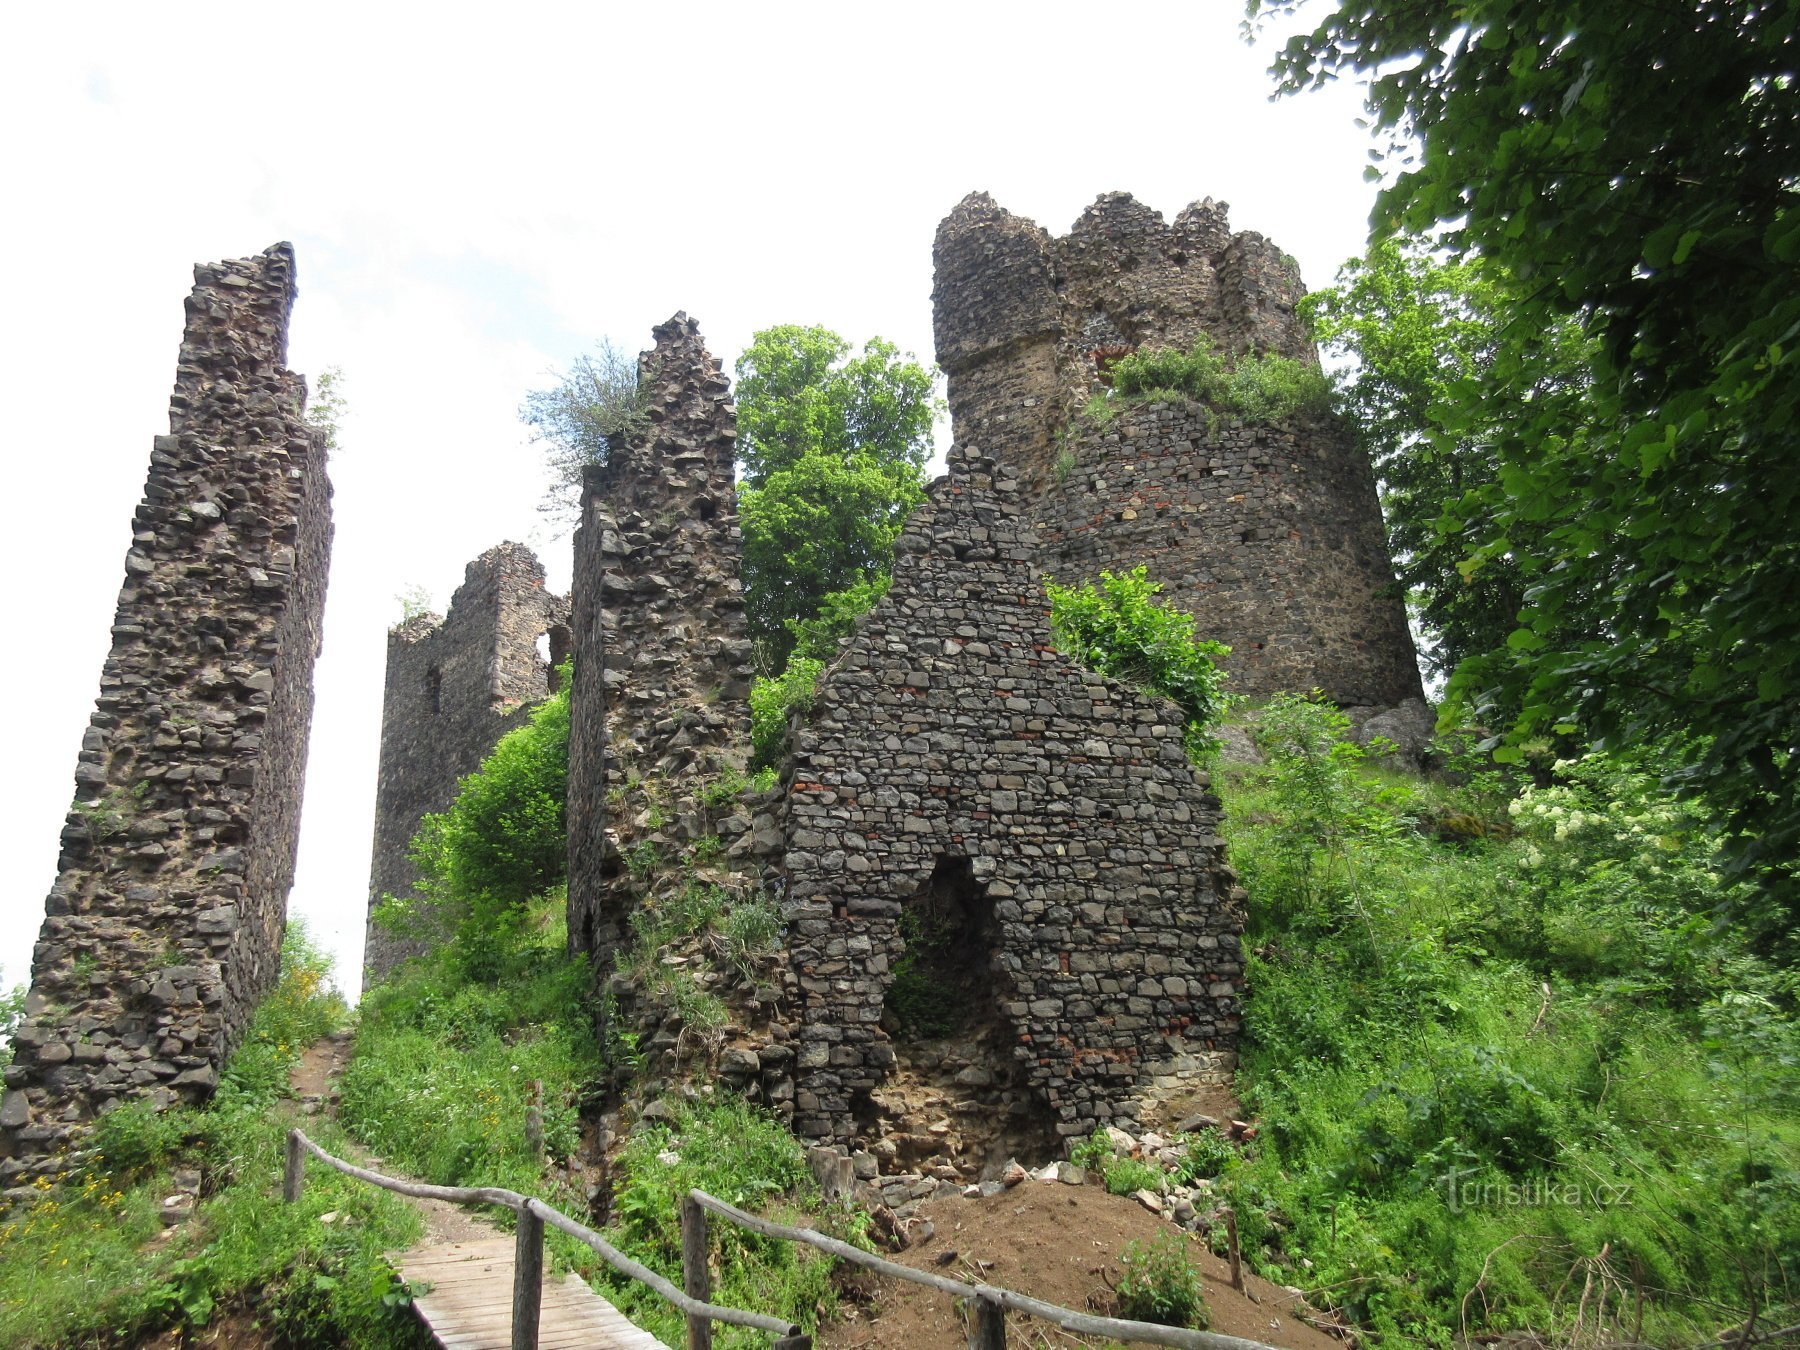 Première vue de la ruine avec la tour ronde